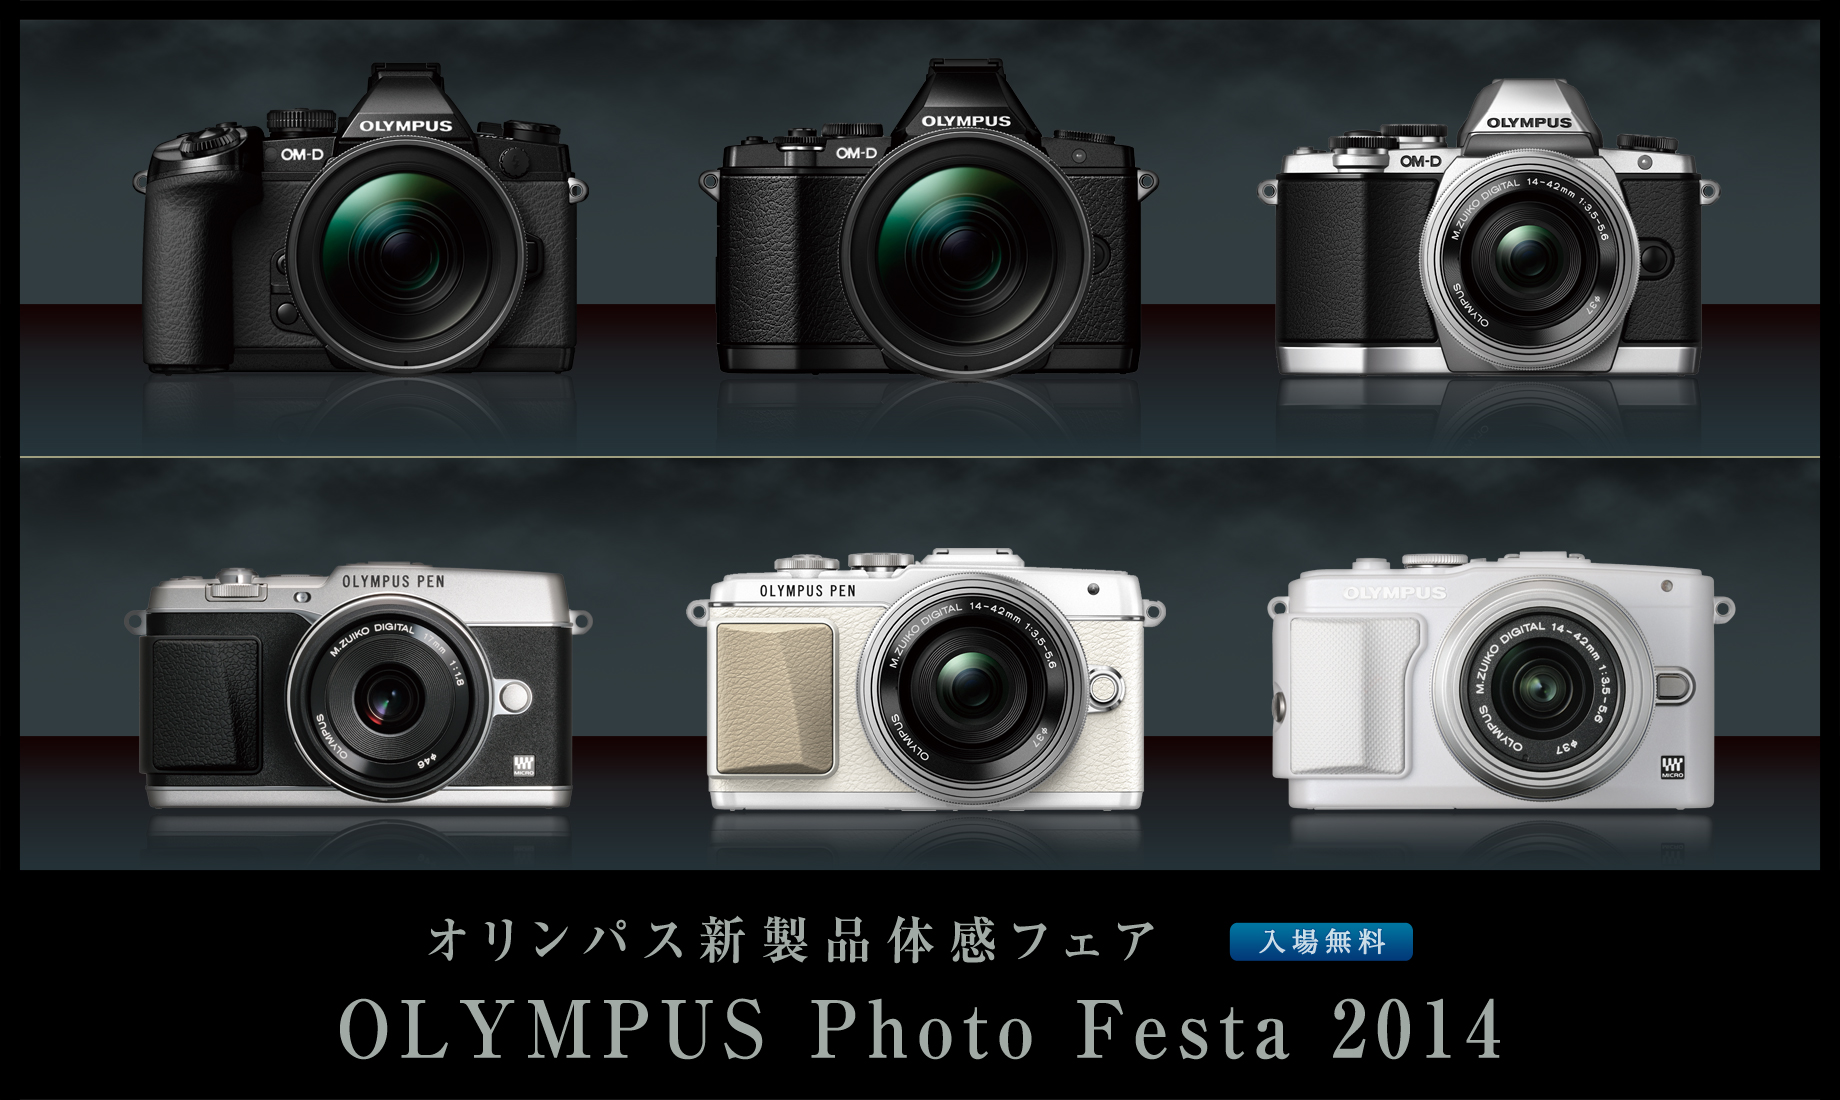 オリンパス新製品体感フェア OLYMPUS Photo Festa 2014